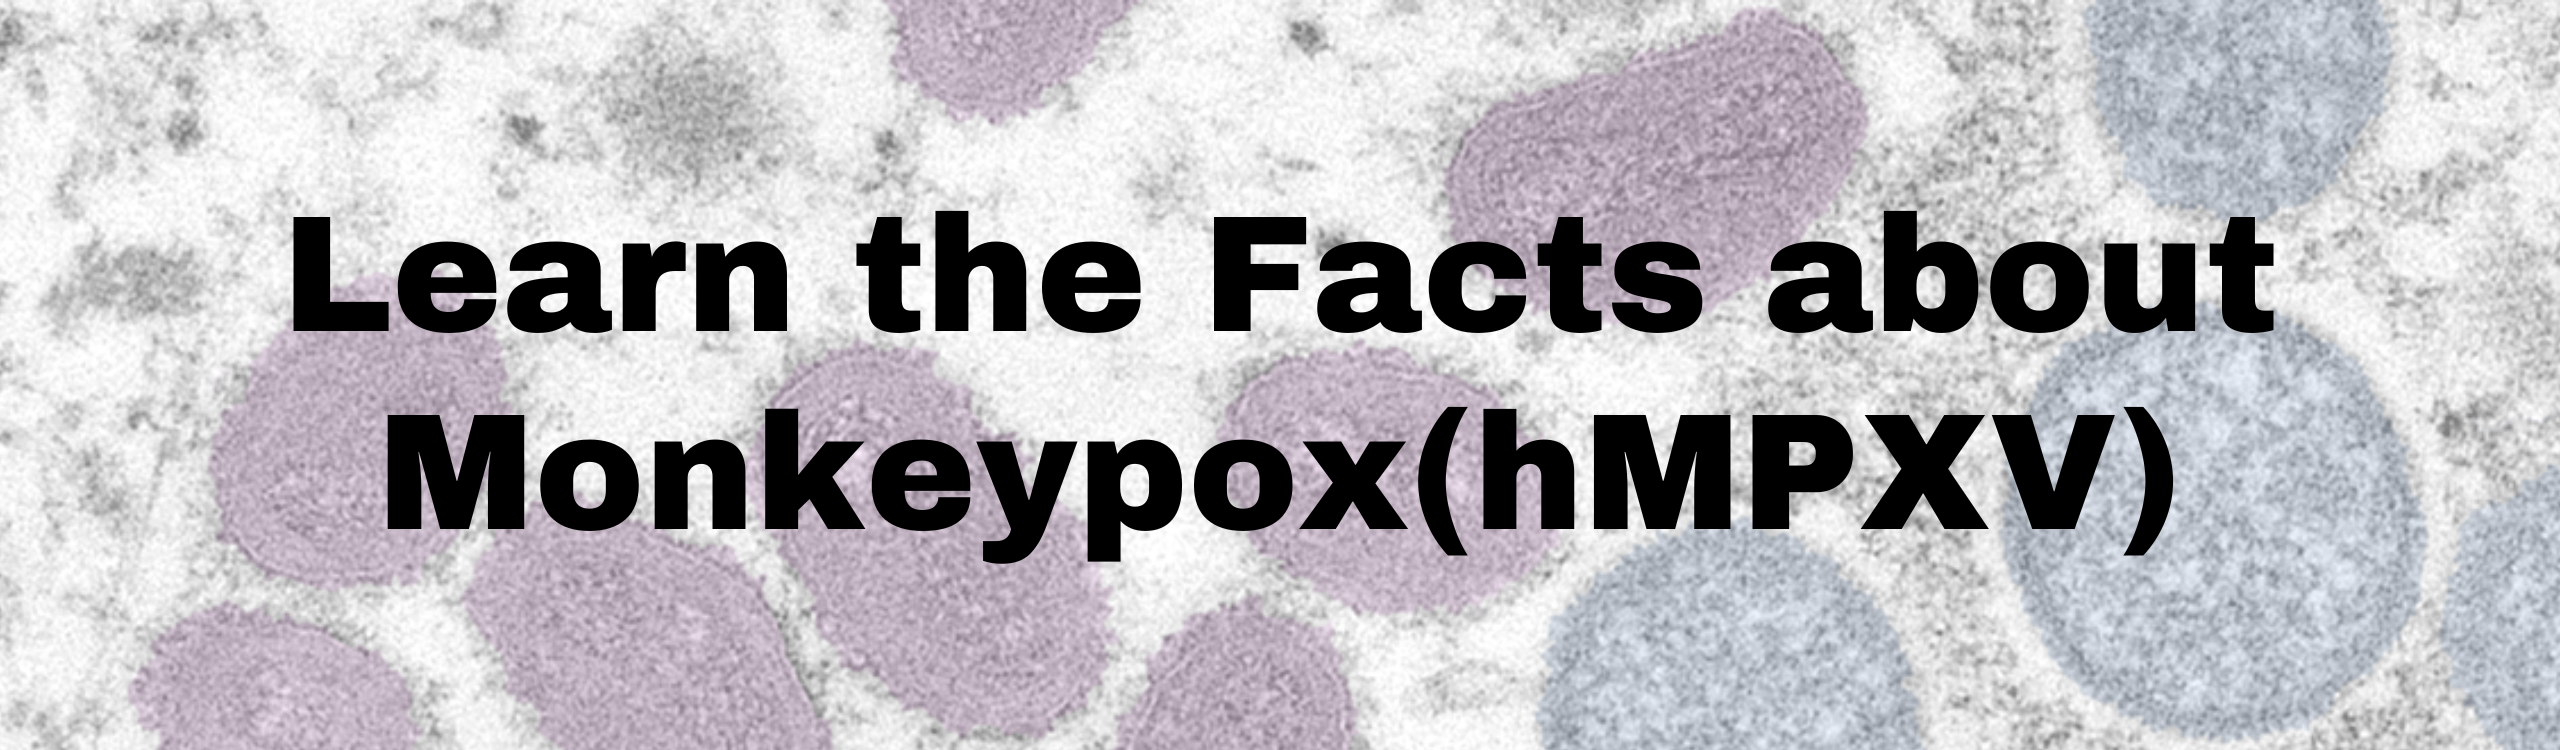 Monkeypox (hMPXV)